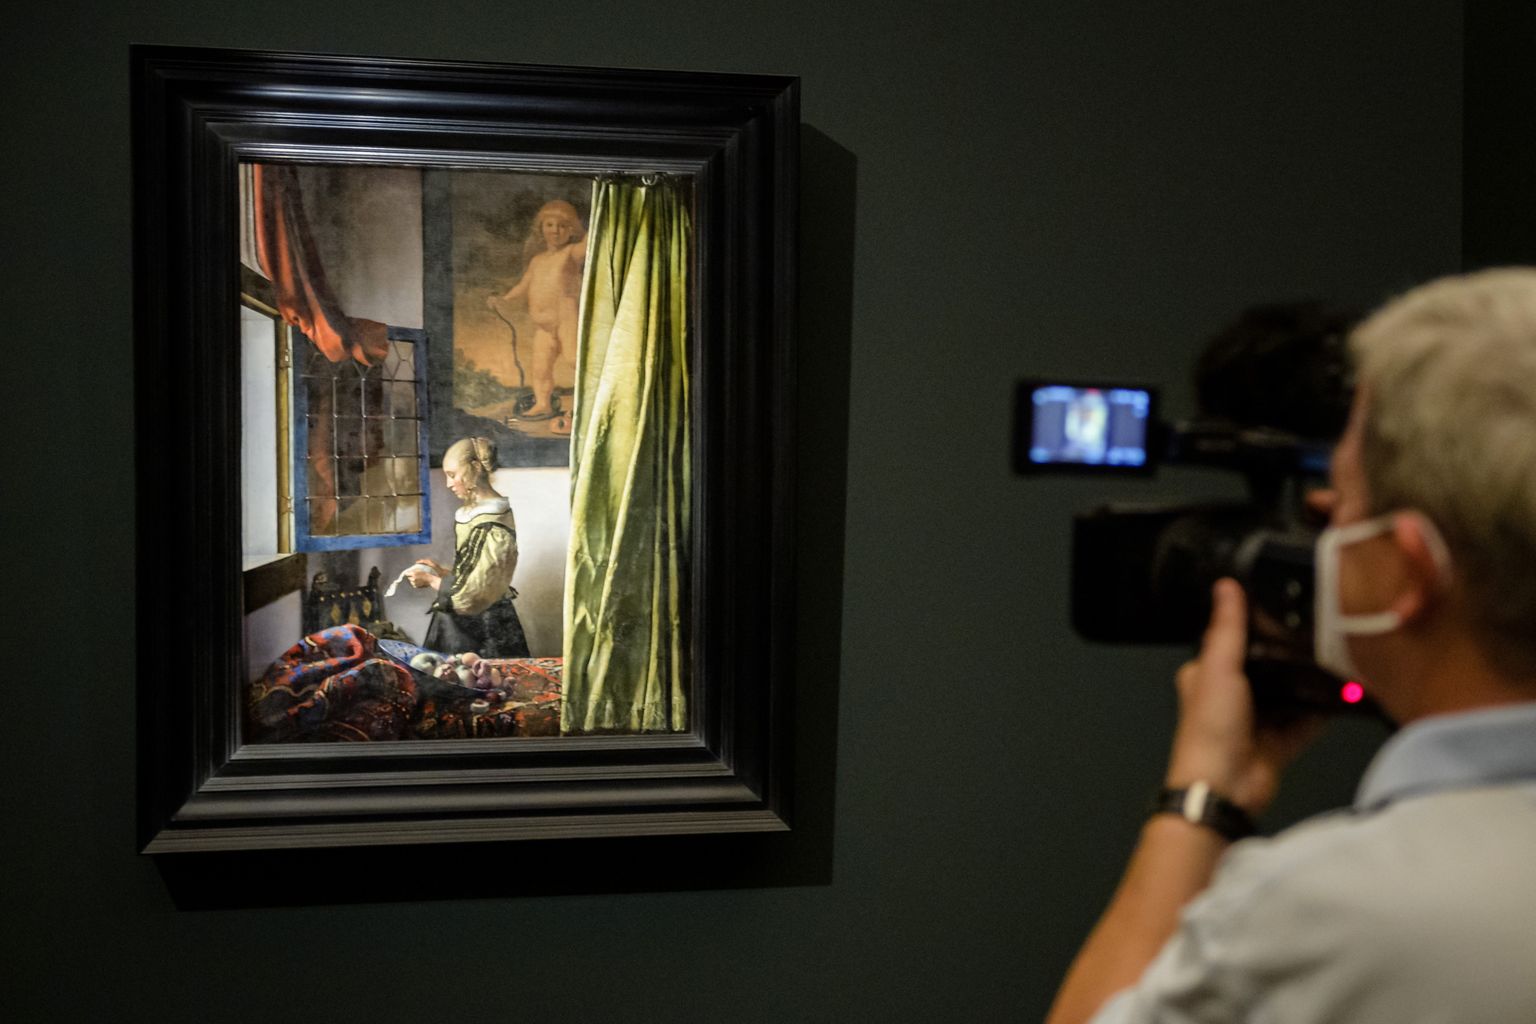 Hollandi 17. sajandi kunstniku Johannes Vermeeri maal  «Tüdruk lugemas avatud akna juures kirja». Seinal on näha Amorit, mis tuli restaureerimisel välja 18. sajandi värvikihi alt